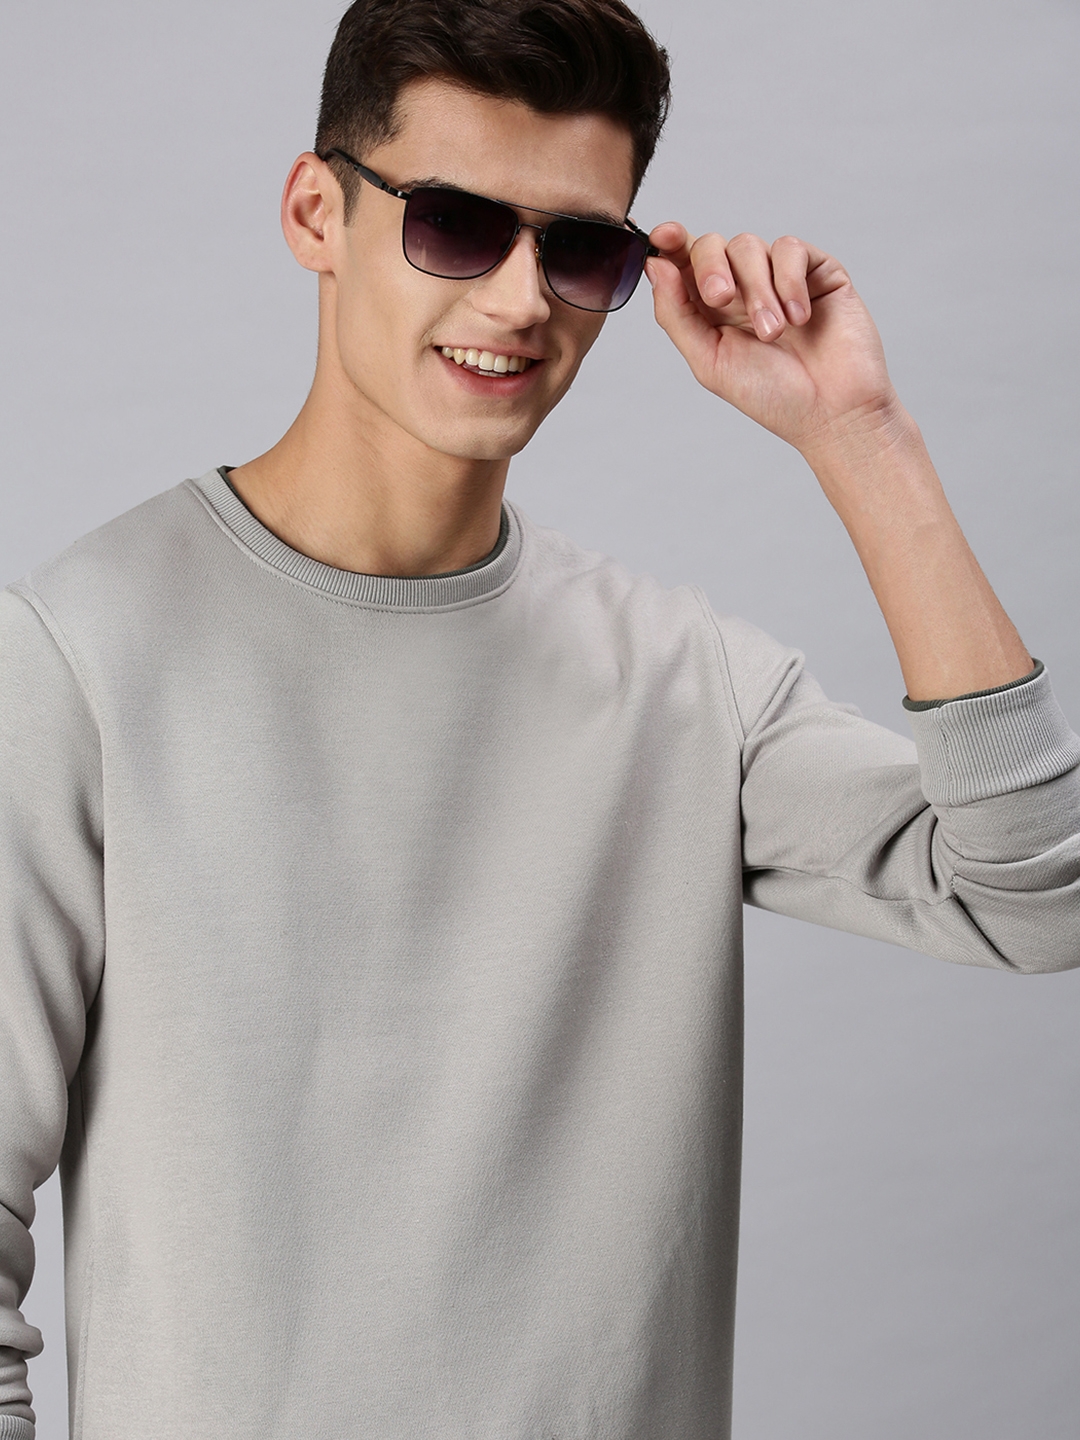 Men's Grey Cotton Solid Sweatshirts